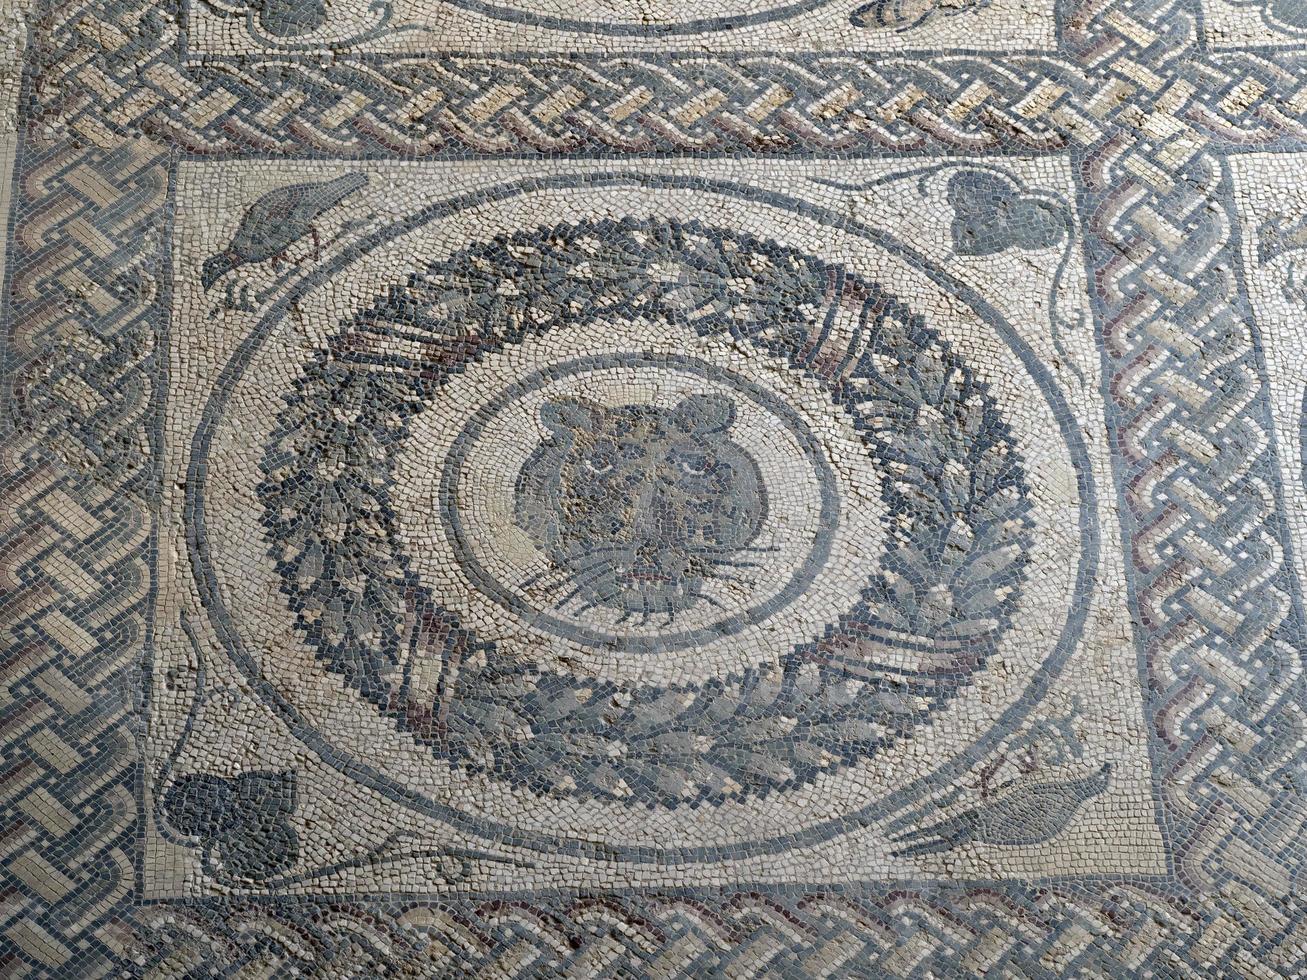 antico romano mosaico di villa del casale, sicilia foto